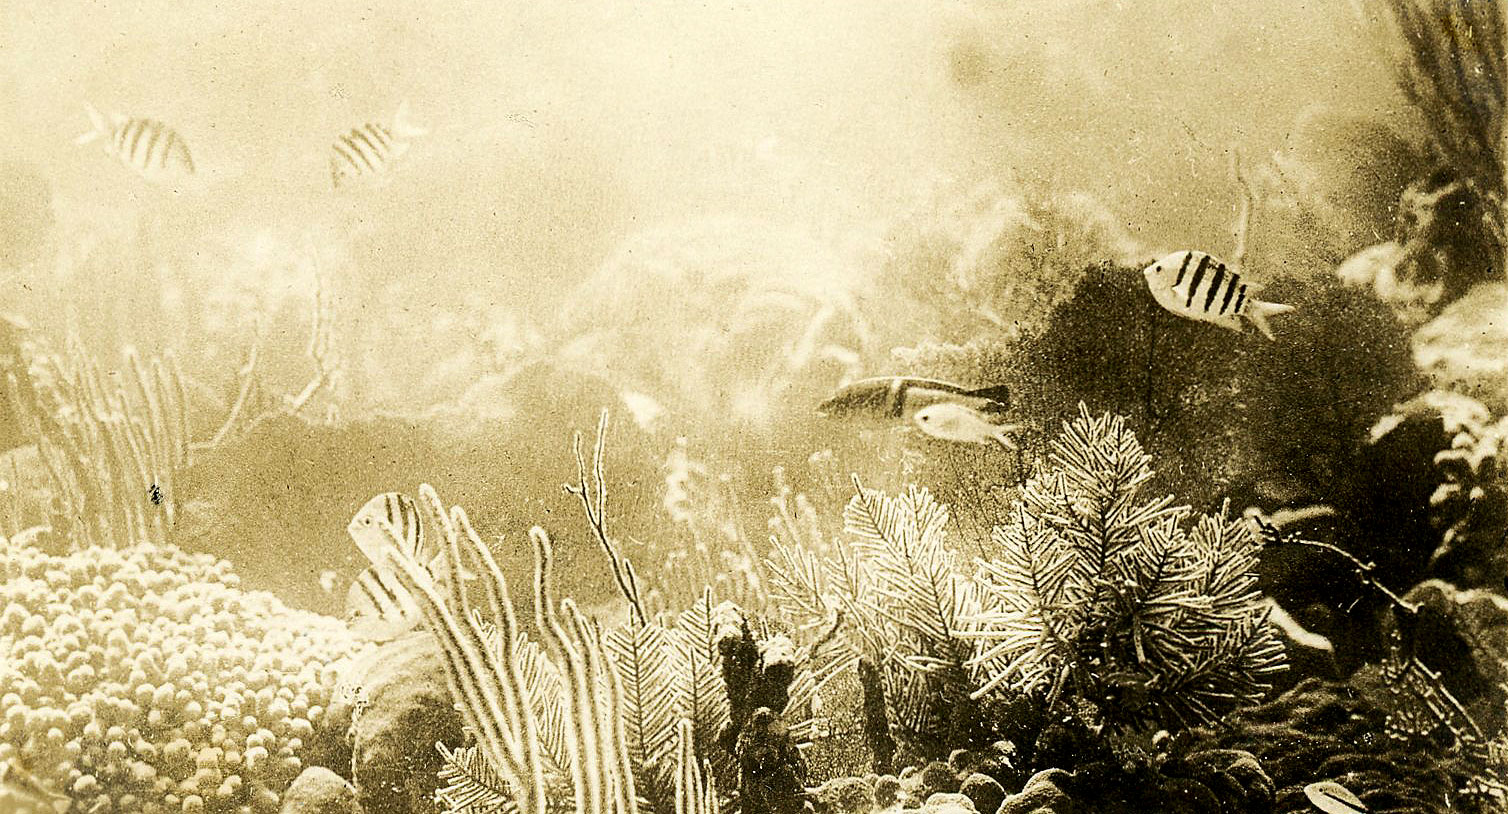 Bahamas Reef Scene Taken in 1914